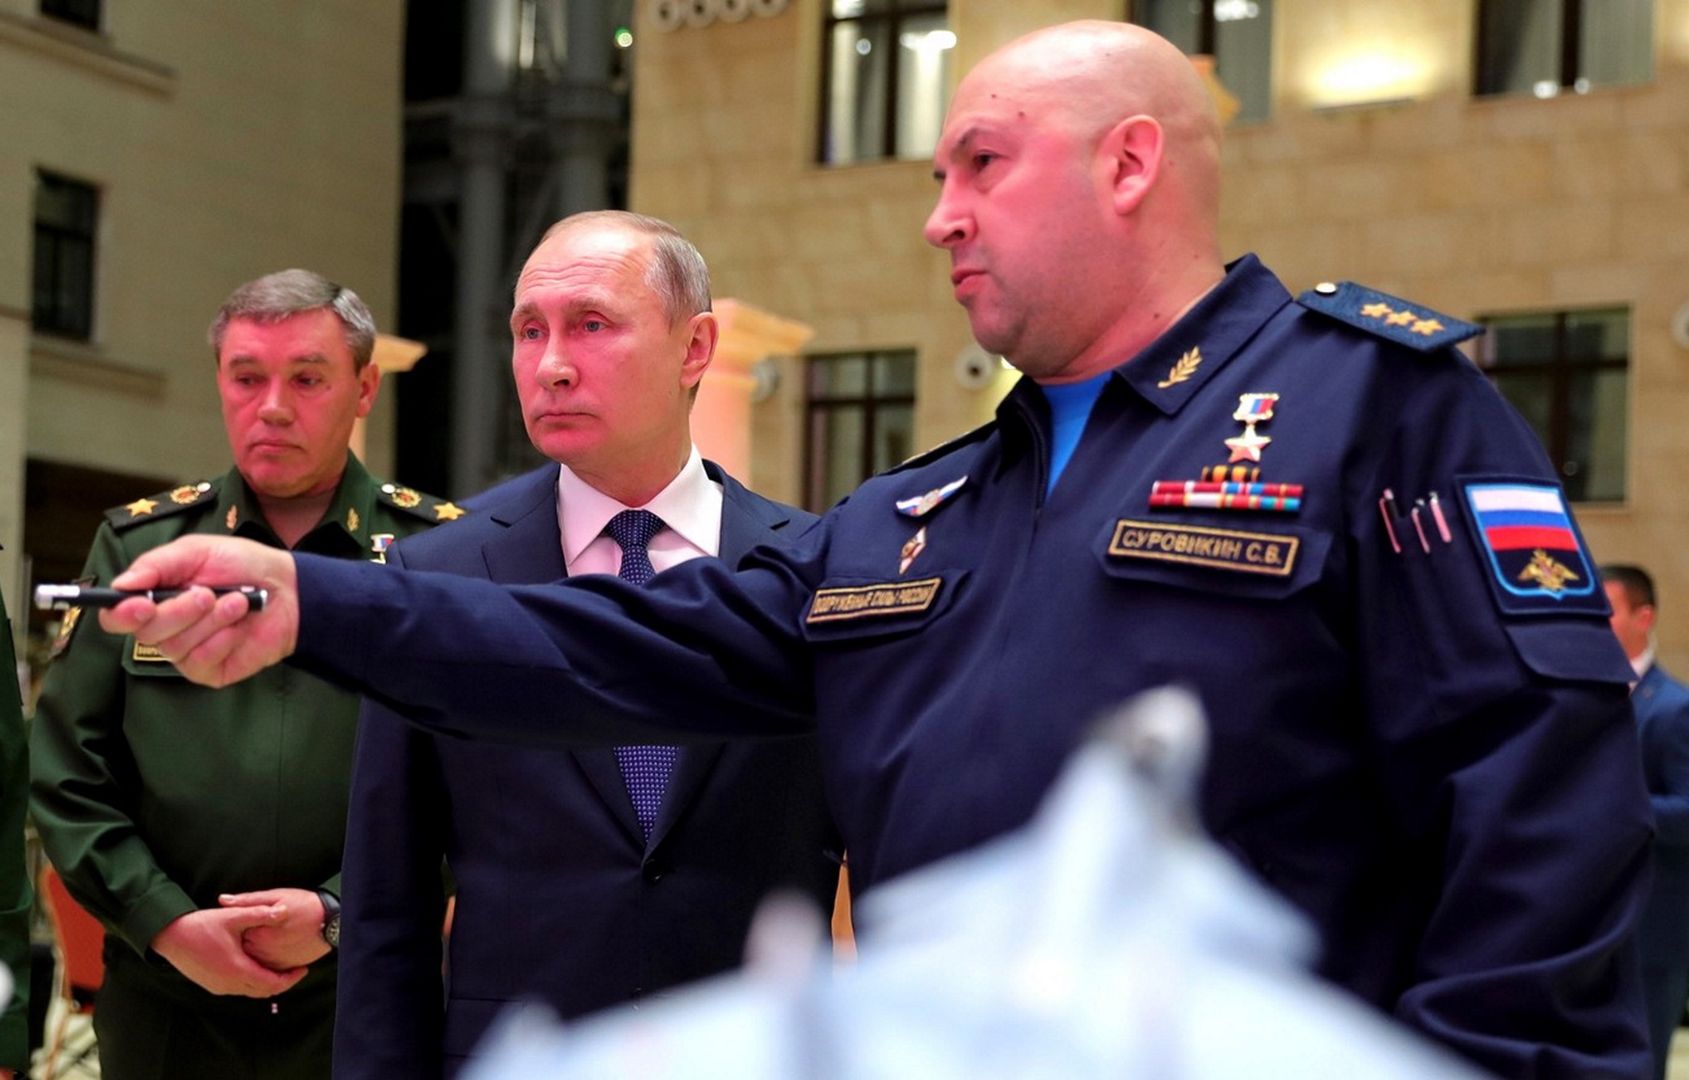 Ocenił rosyjskiego dowódcę: Z całym szacunkiem, to typowy "derzhimorda"